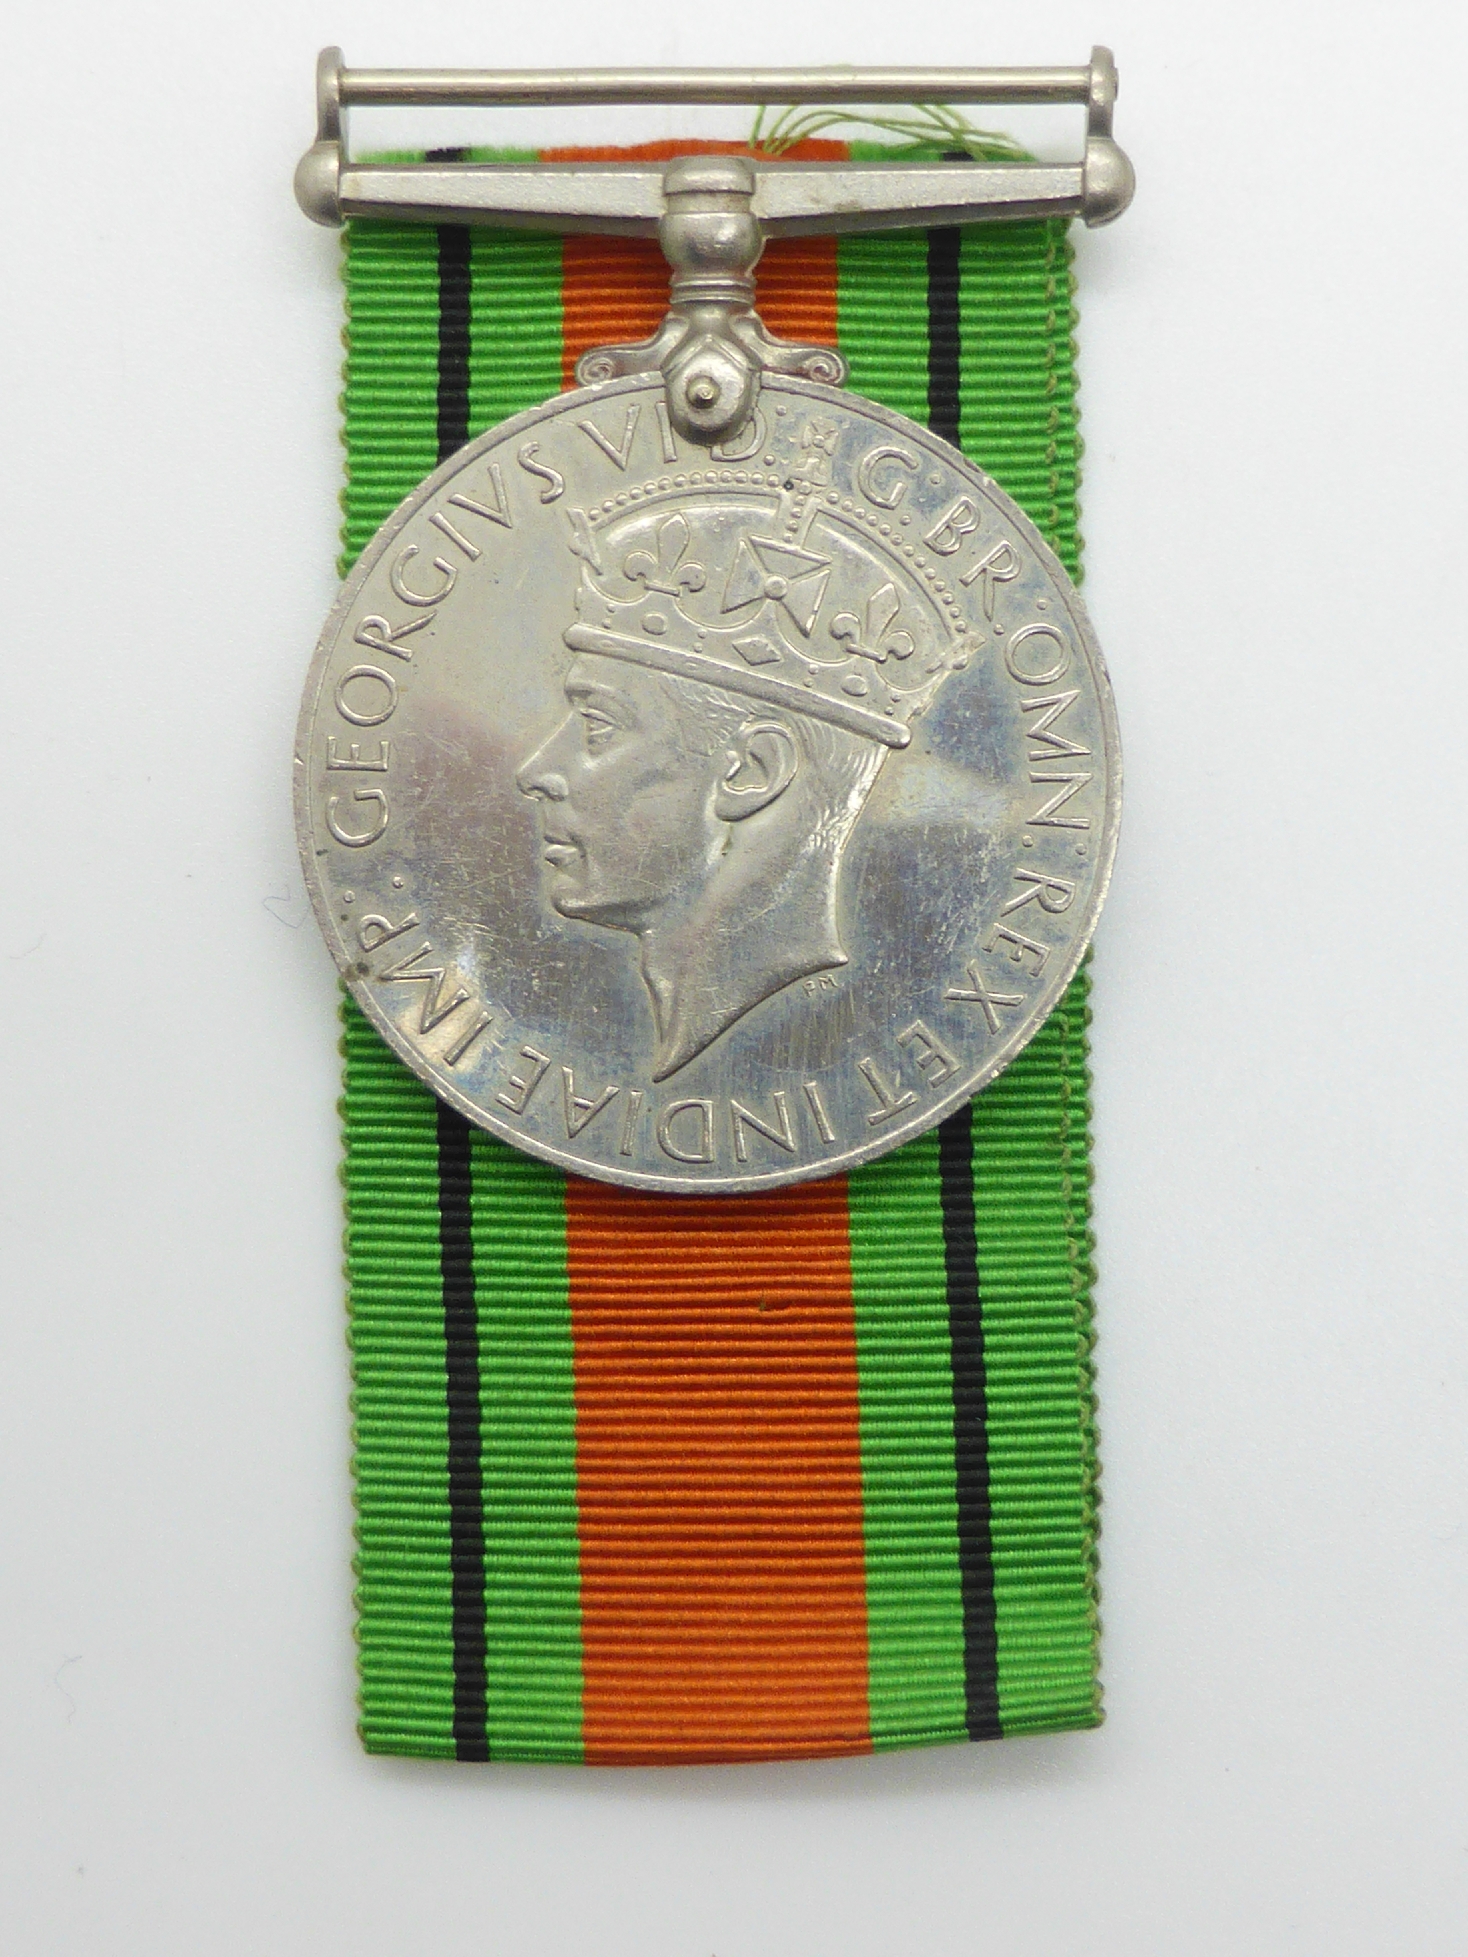 Elizabeth II Imperial Service Medal named to Mrs Jean Margaret Rose together with a WWII War Medal - Image 29 of 47